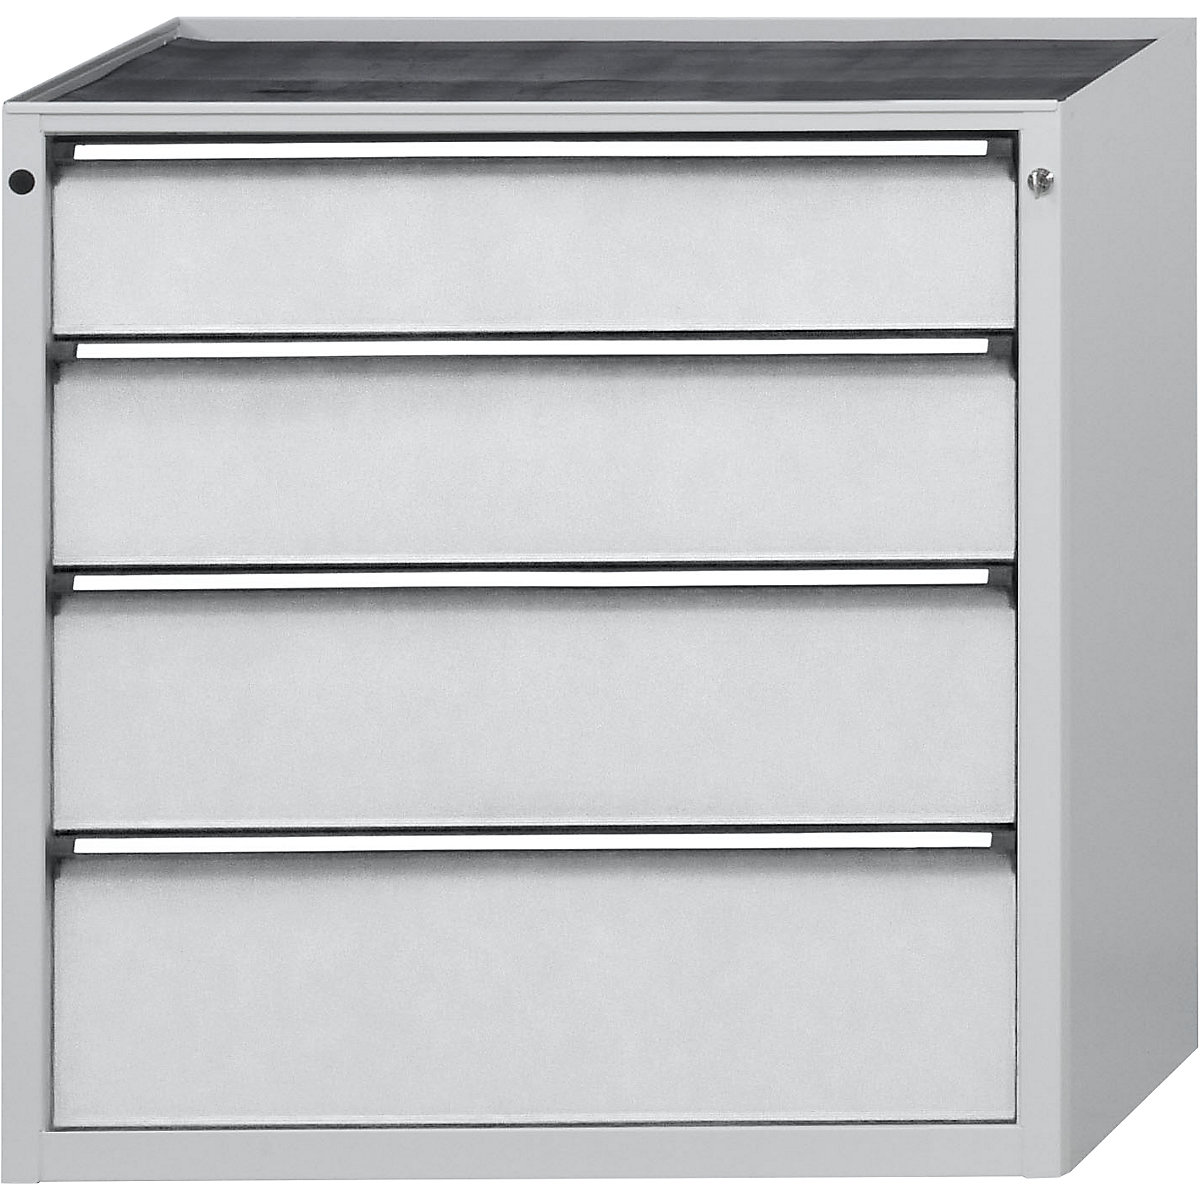 Zásuvková skříň – ANKE, š x h 760 x 675 mm, nosnost zásuvky 200 kg, 4 zásuvky, výška 980 mm, čelo světle šedé